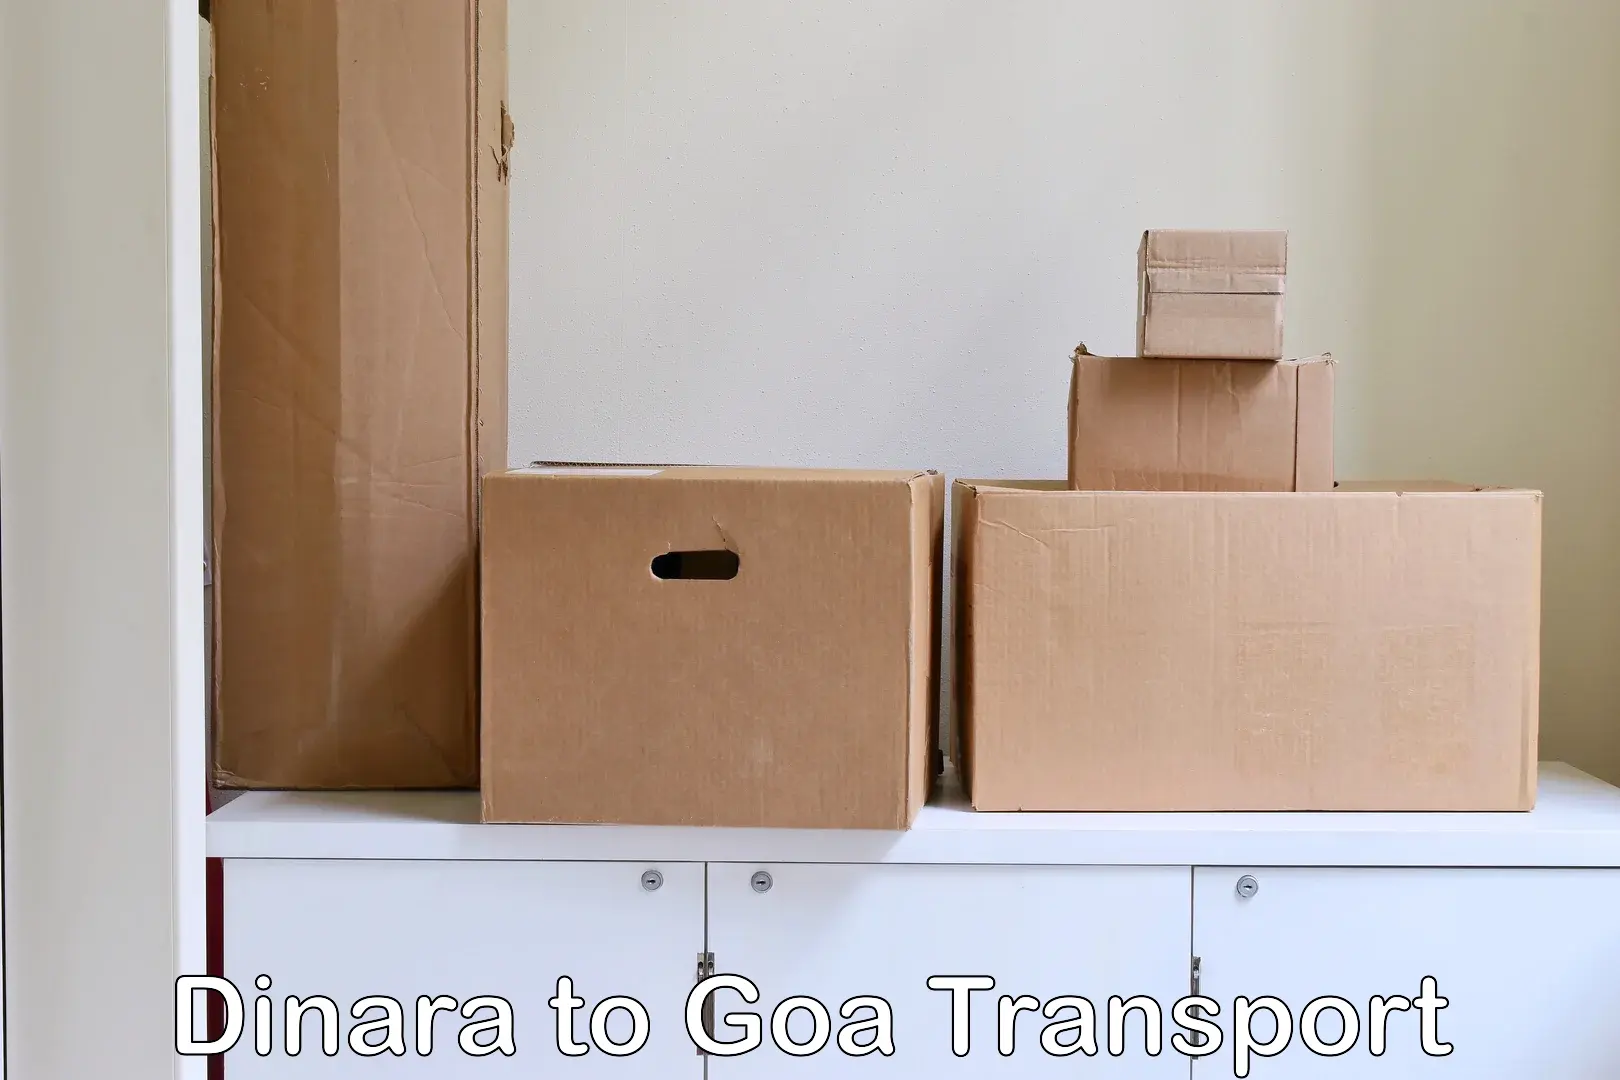 Logistics transportation services Dinara to Goa